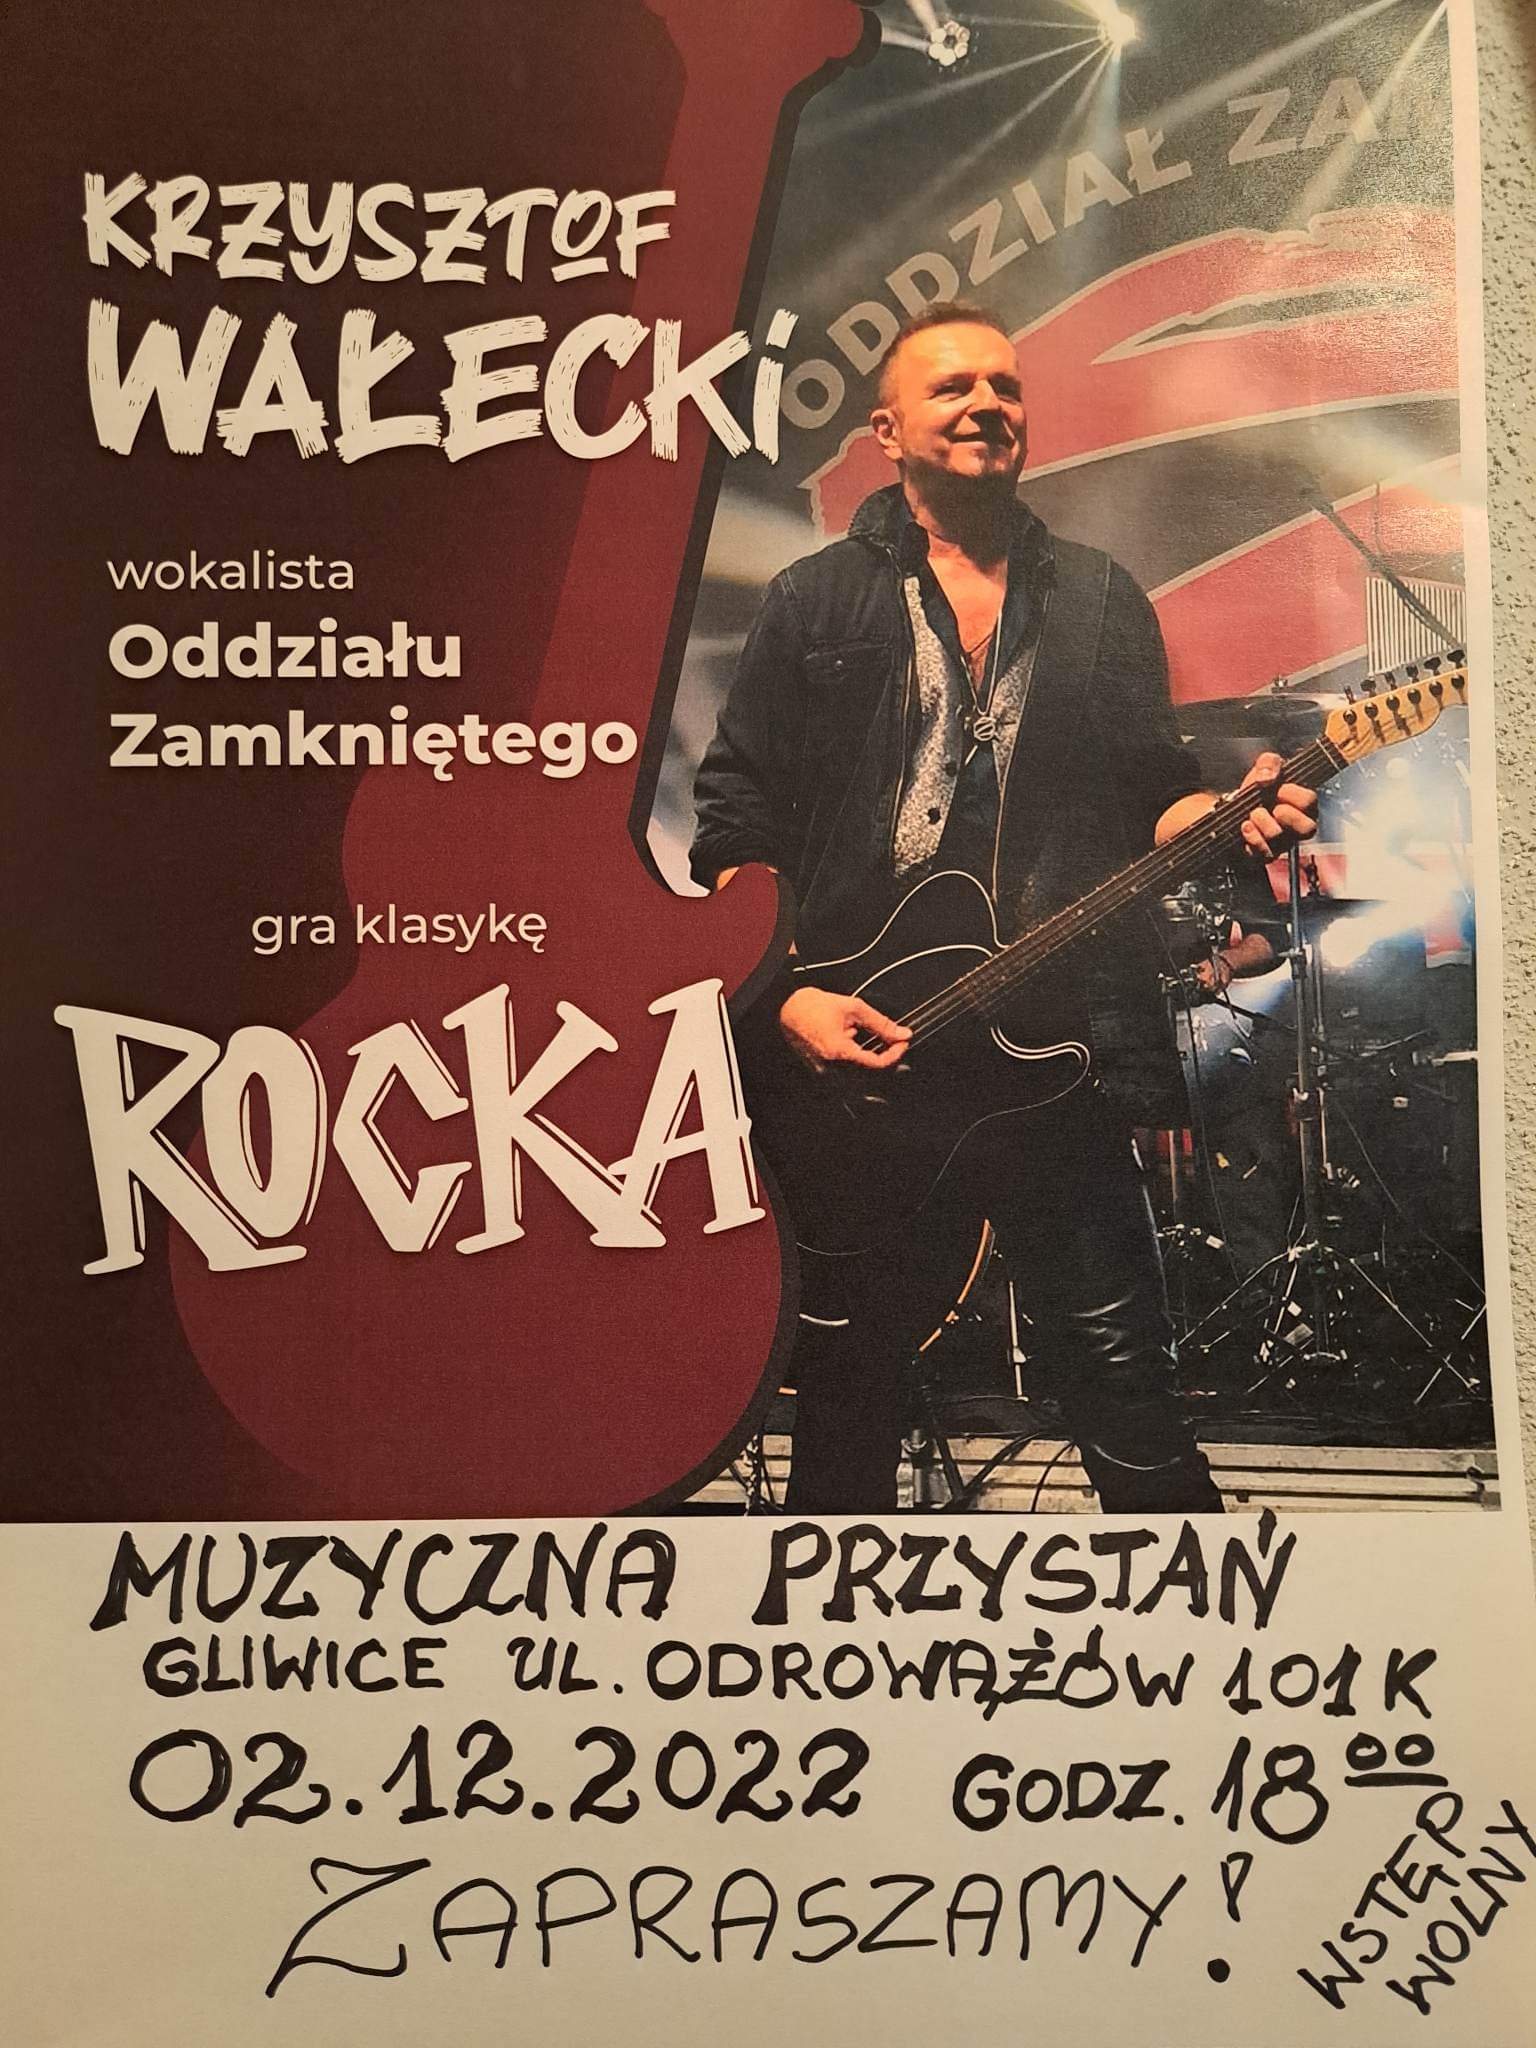 Koncert Krzysztofa Wałeckiego - wokalisty Oddziału Zamkniętego 